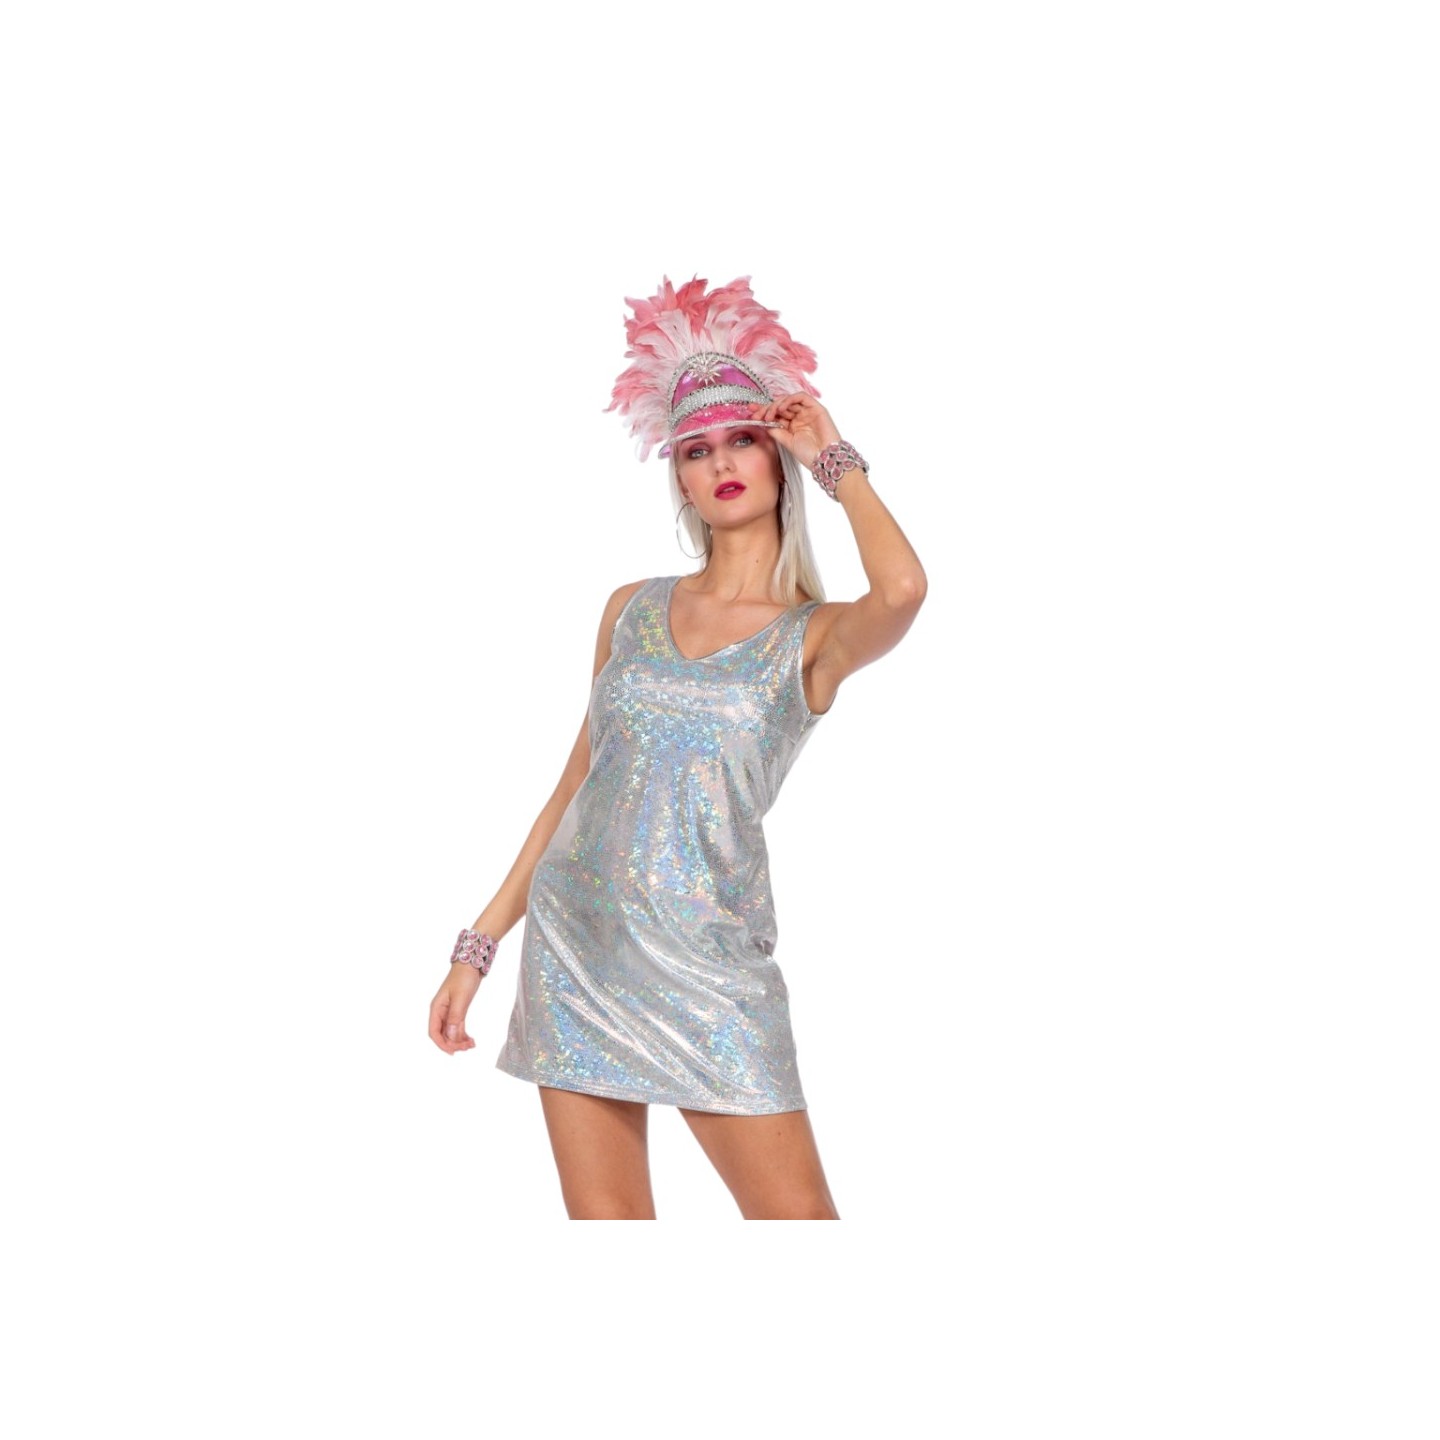 glitter kleedje holografisch bling jurkje carnaval